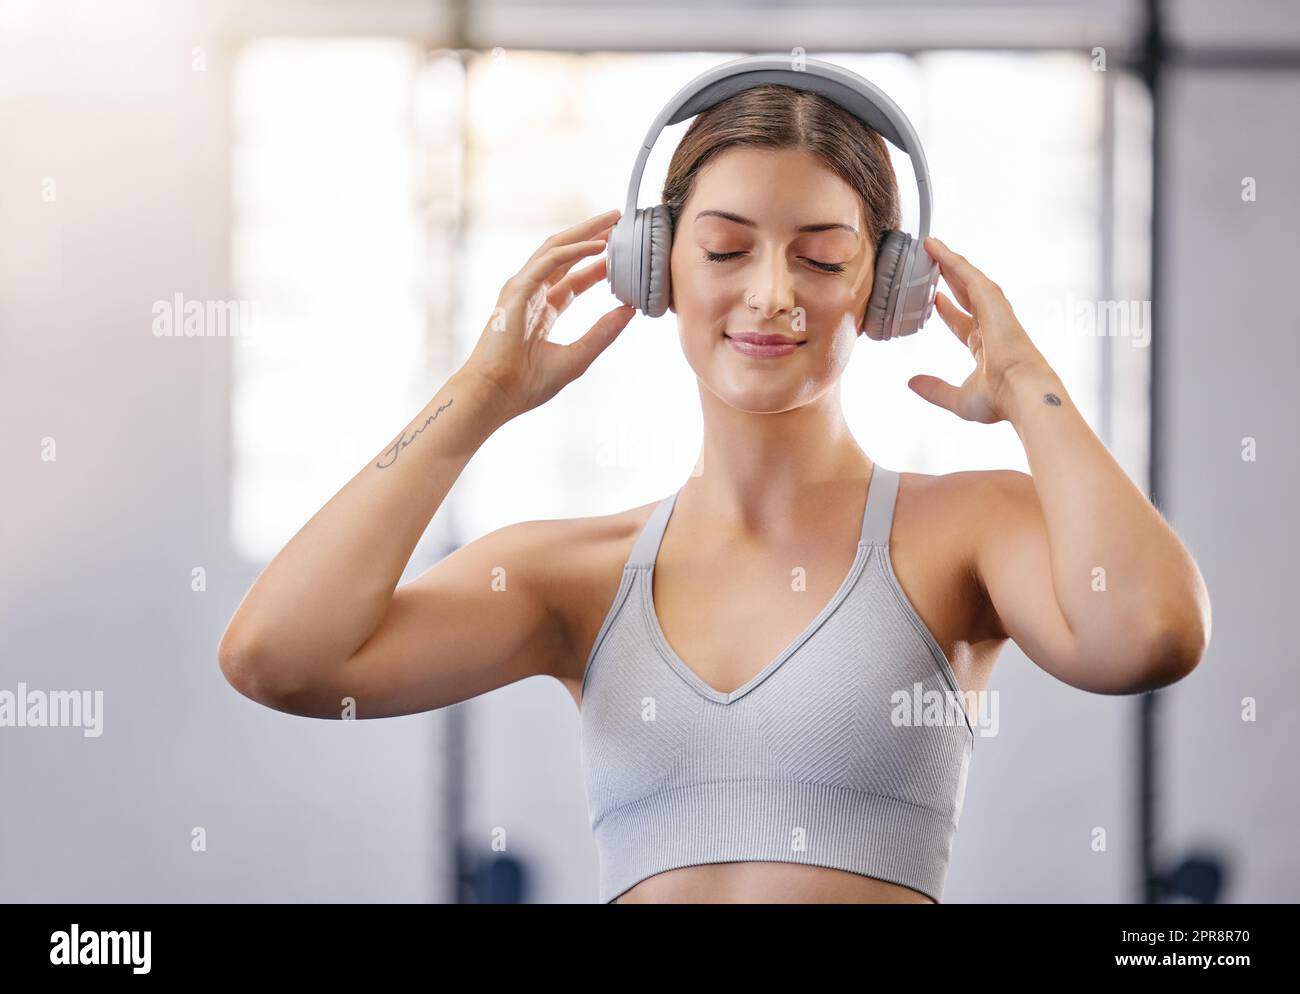 Una giovane donna caucasica attiva che ascolta musica rilassante con le cuffie mentre fa una pausa dall'esercizio fisico in palestra. Atleta che rimane motivata con musica calma durante l'allenamento in un centro fitness Foto Stock